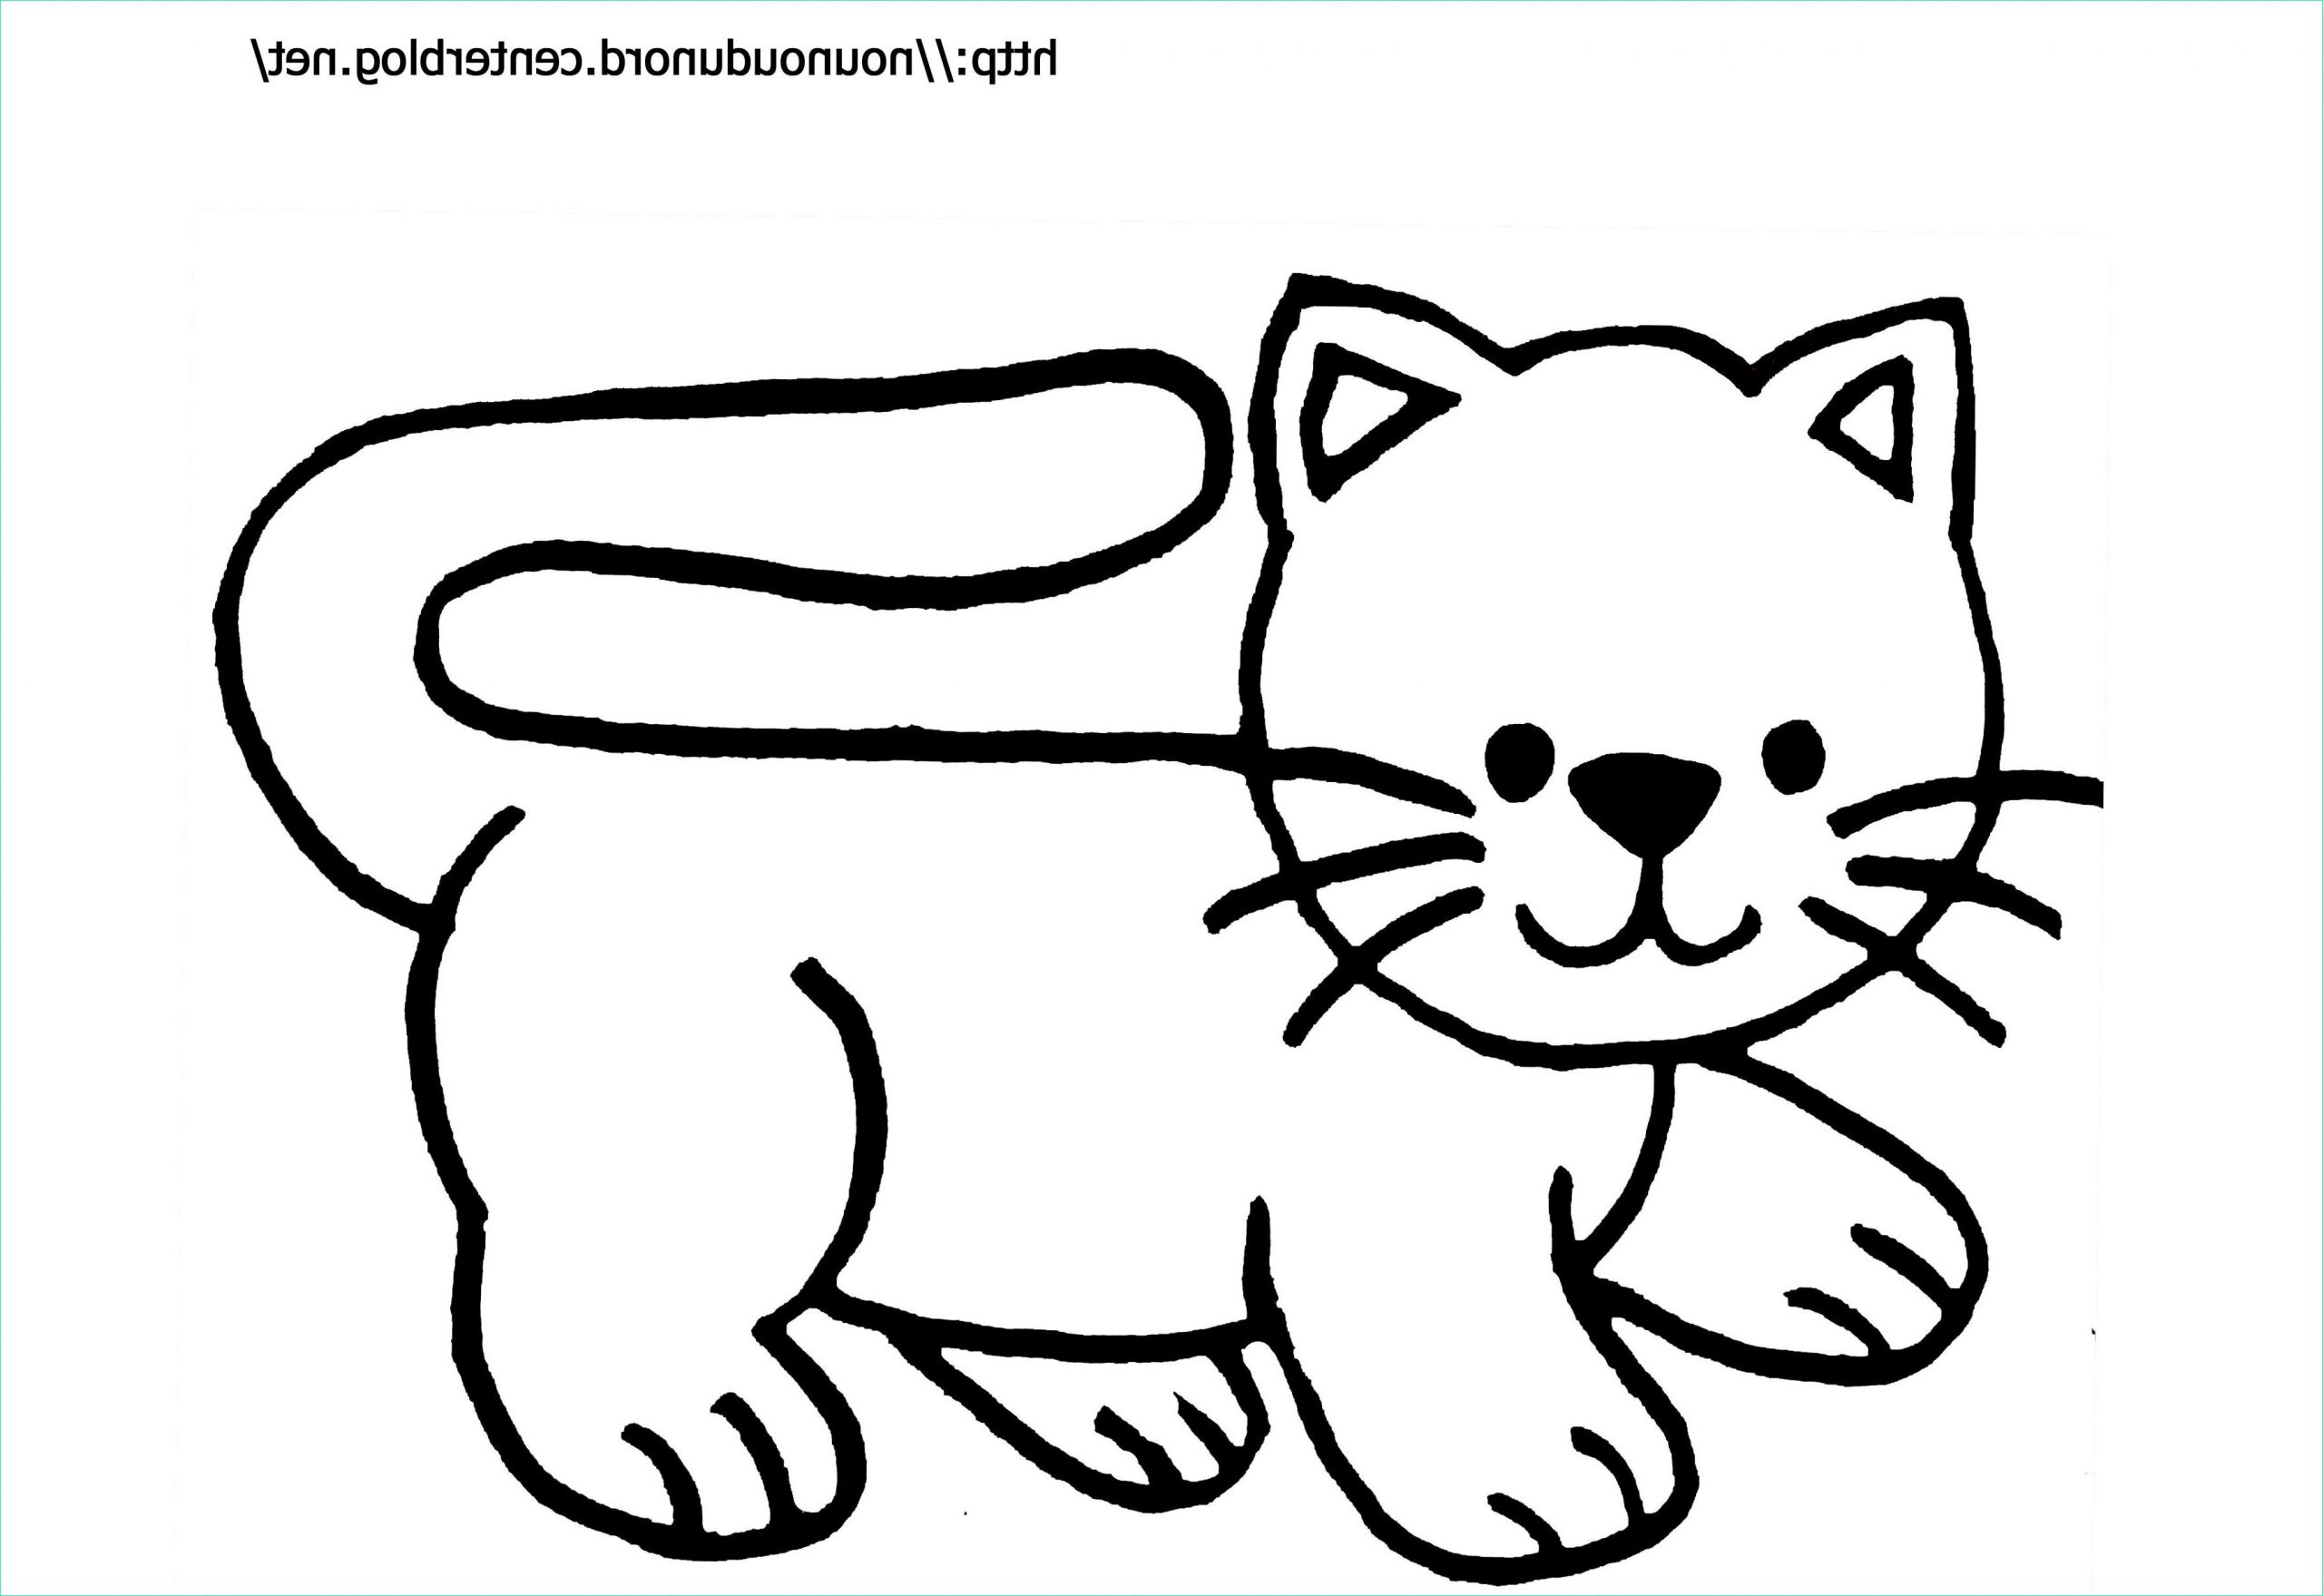 dessin de chat facile a reproduire